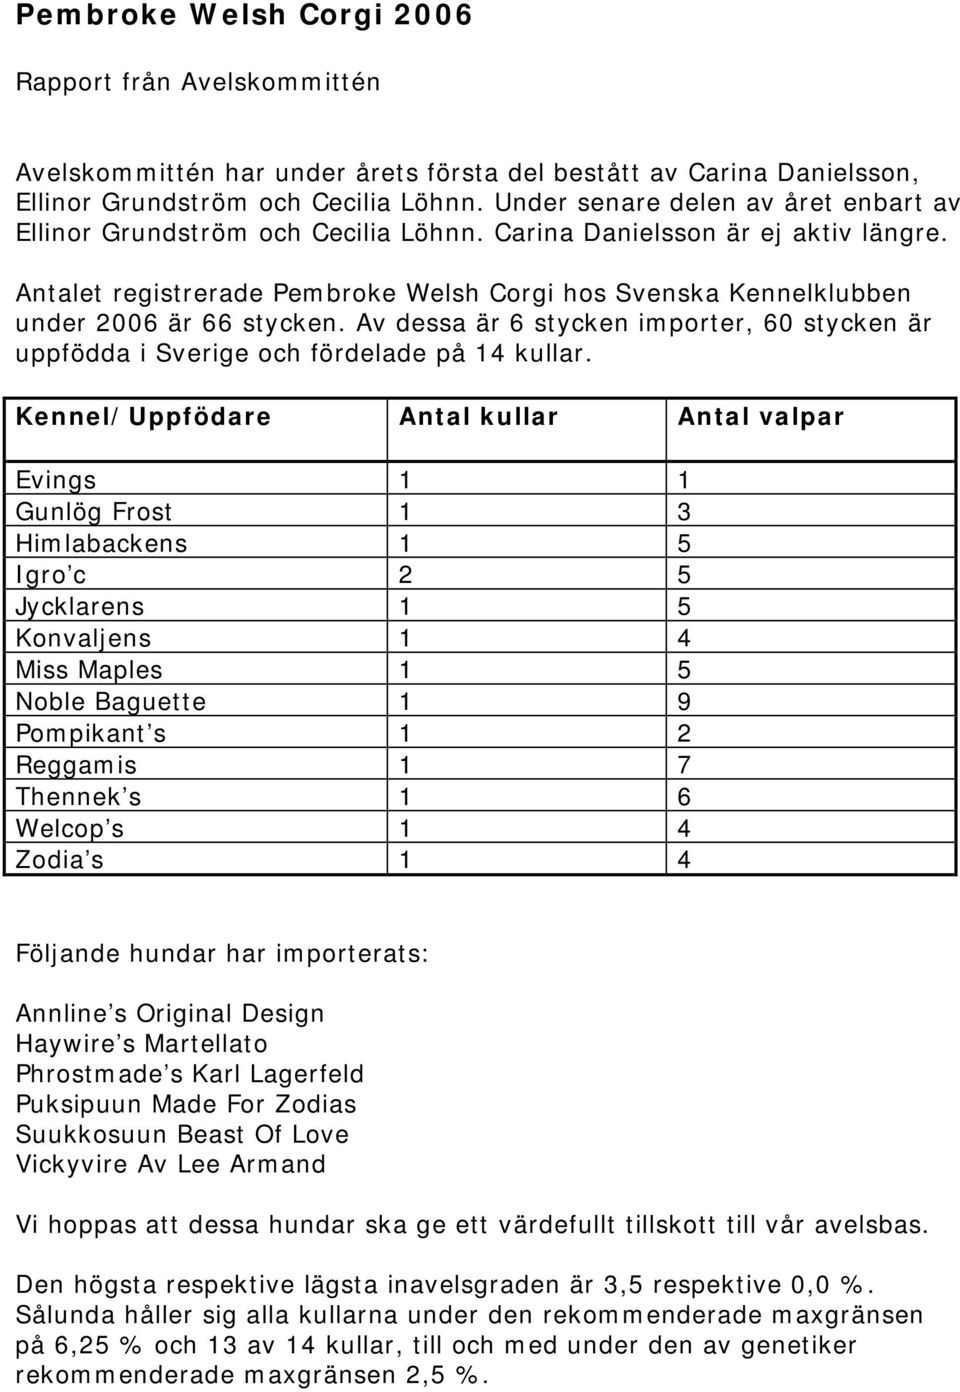 Antalet registrerade Pembroke Welsh Corgi hos Svenska Kennelklubben under 2006 är 66 stycken. Av dessa är 6 stycken importer, 60 stycken är uppfödda i Sverige och fördelade på 14 kullar.